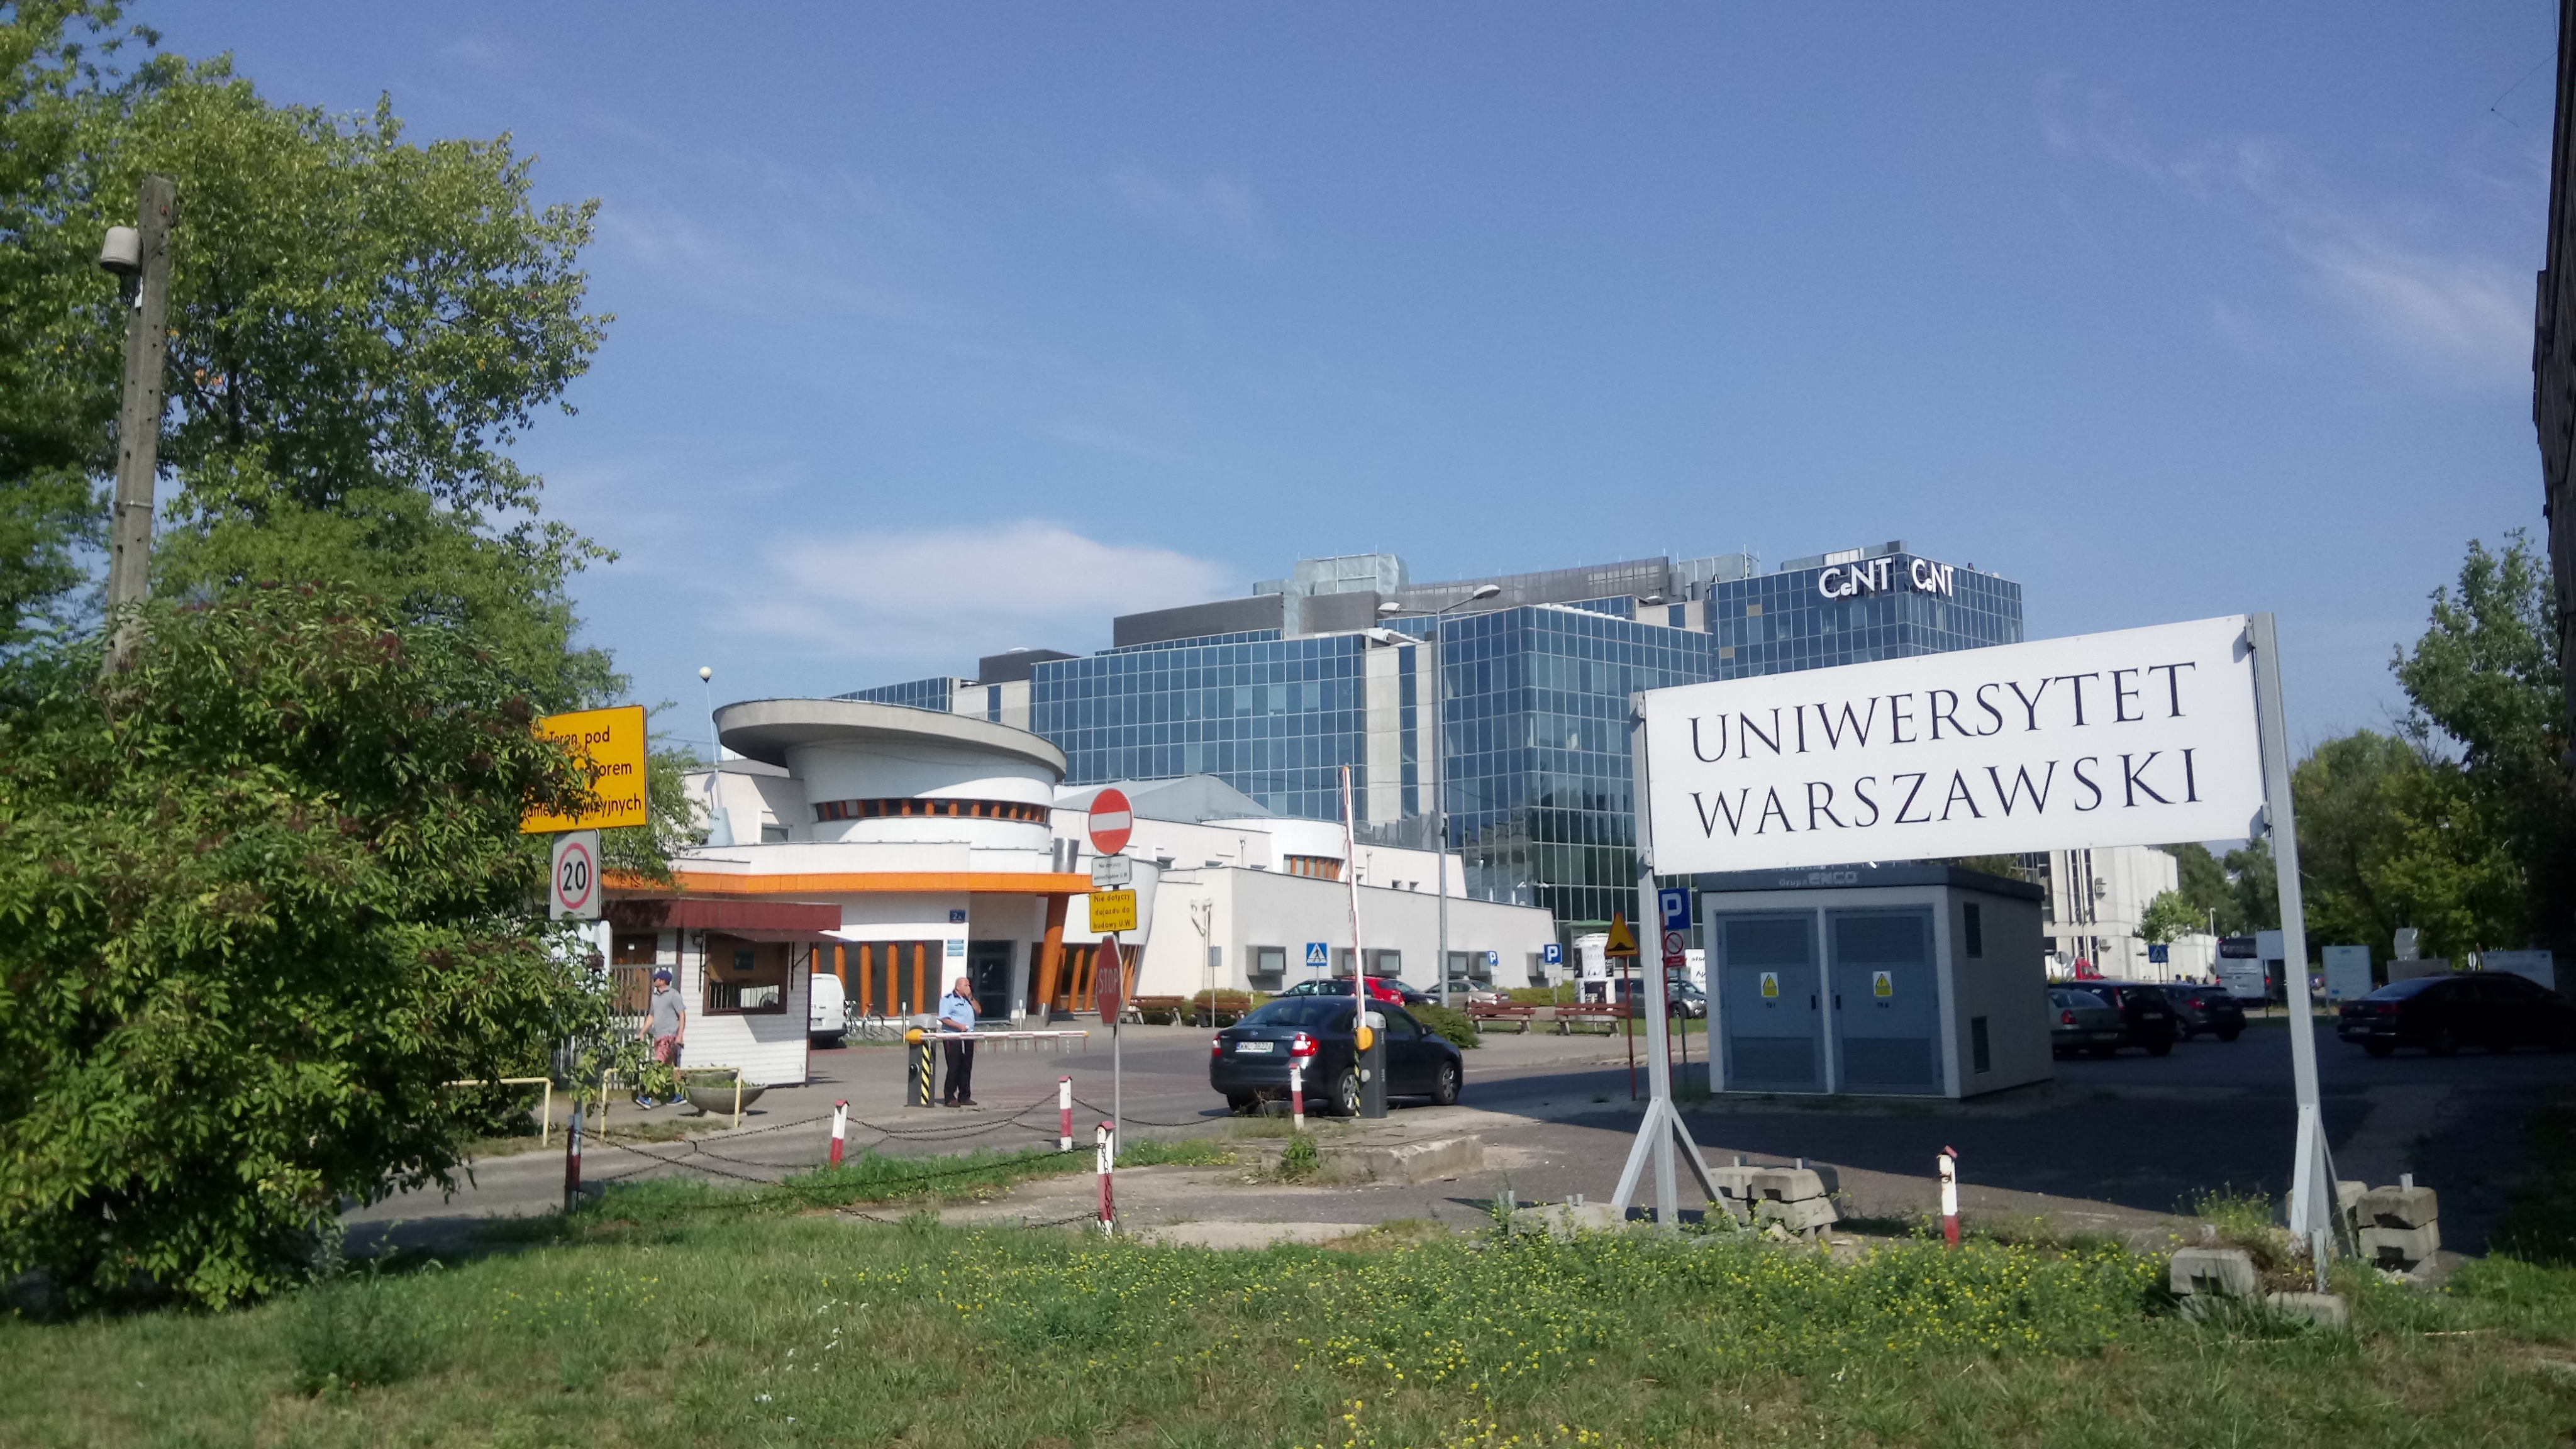 Университет Варшавы